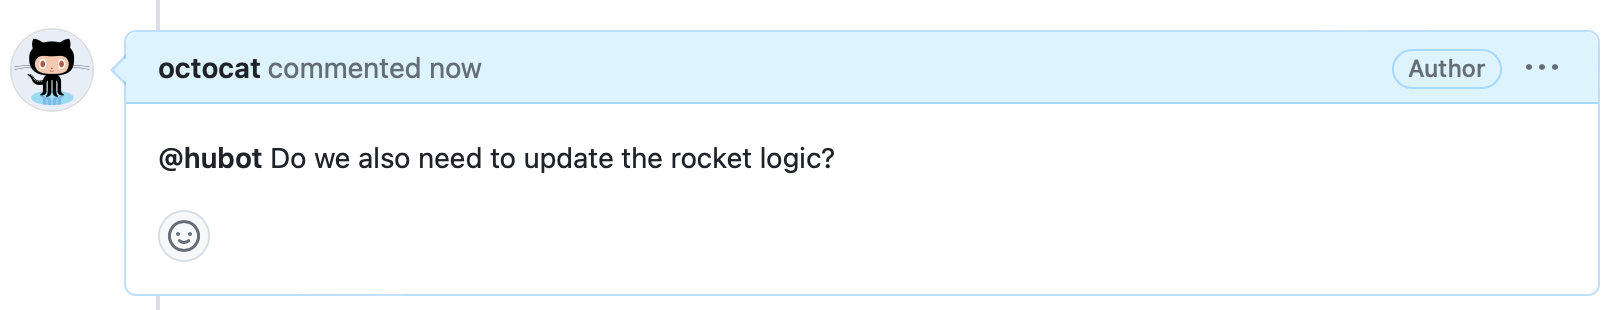 문제 주석의 스크린샷 헤더는 "octocat 지금 댓글"라고 말하고 몸은 말한다 "@hubot 우리는 또한 로켓 논리를 업데이트해야합니까?"